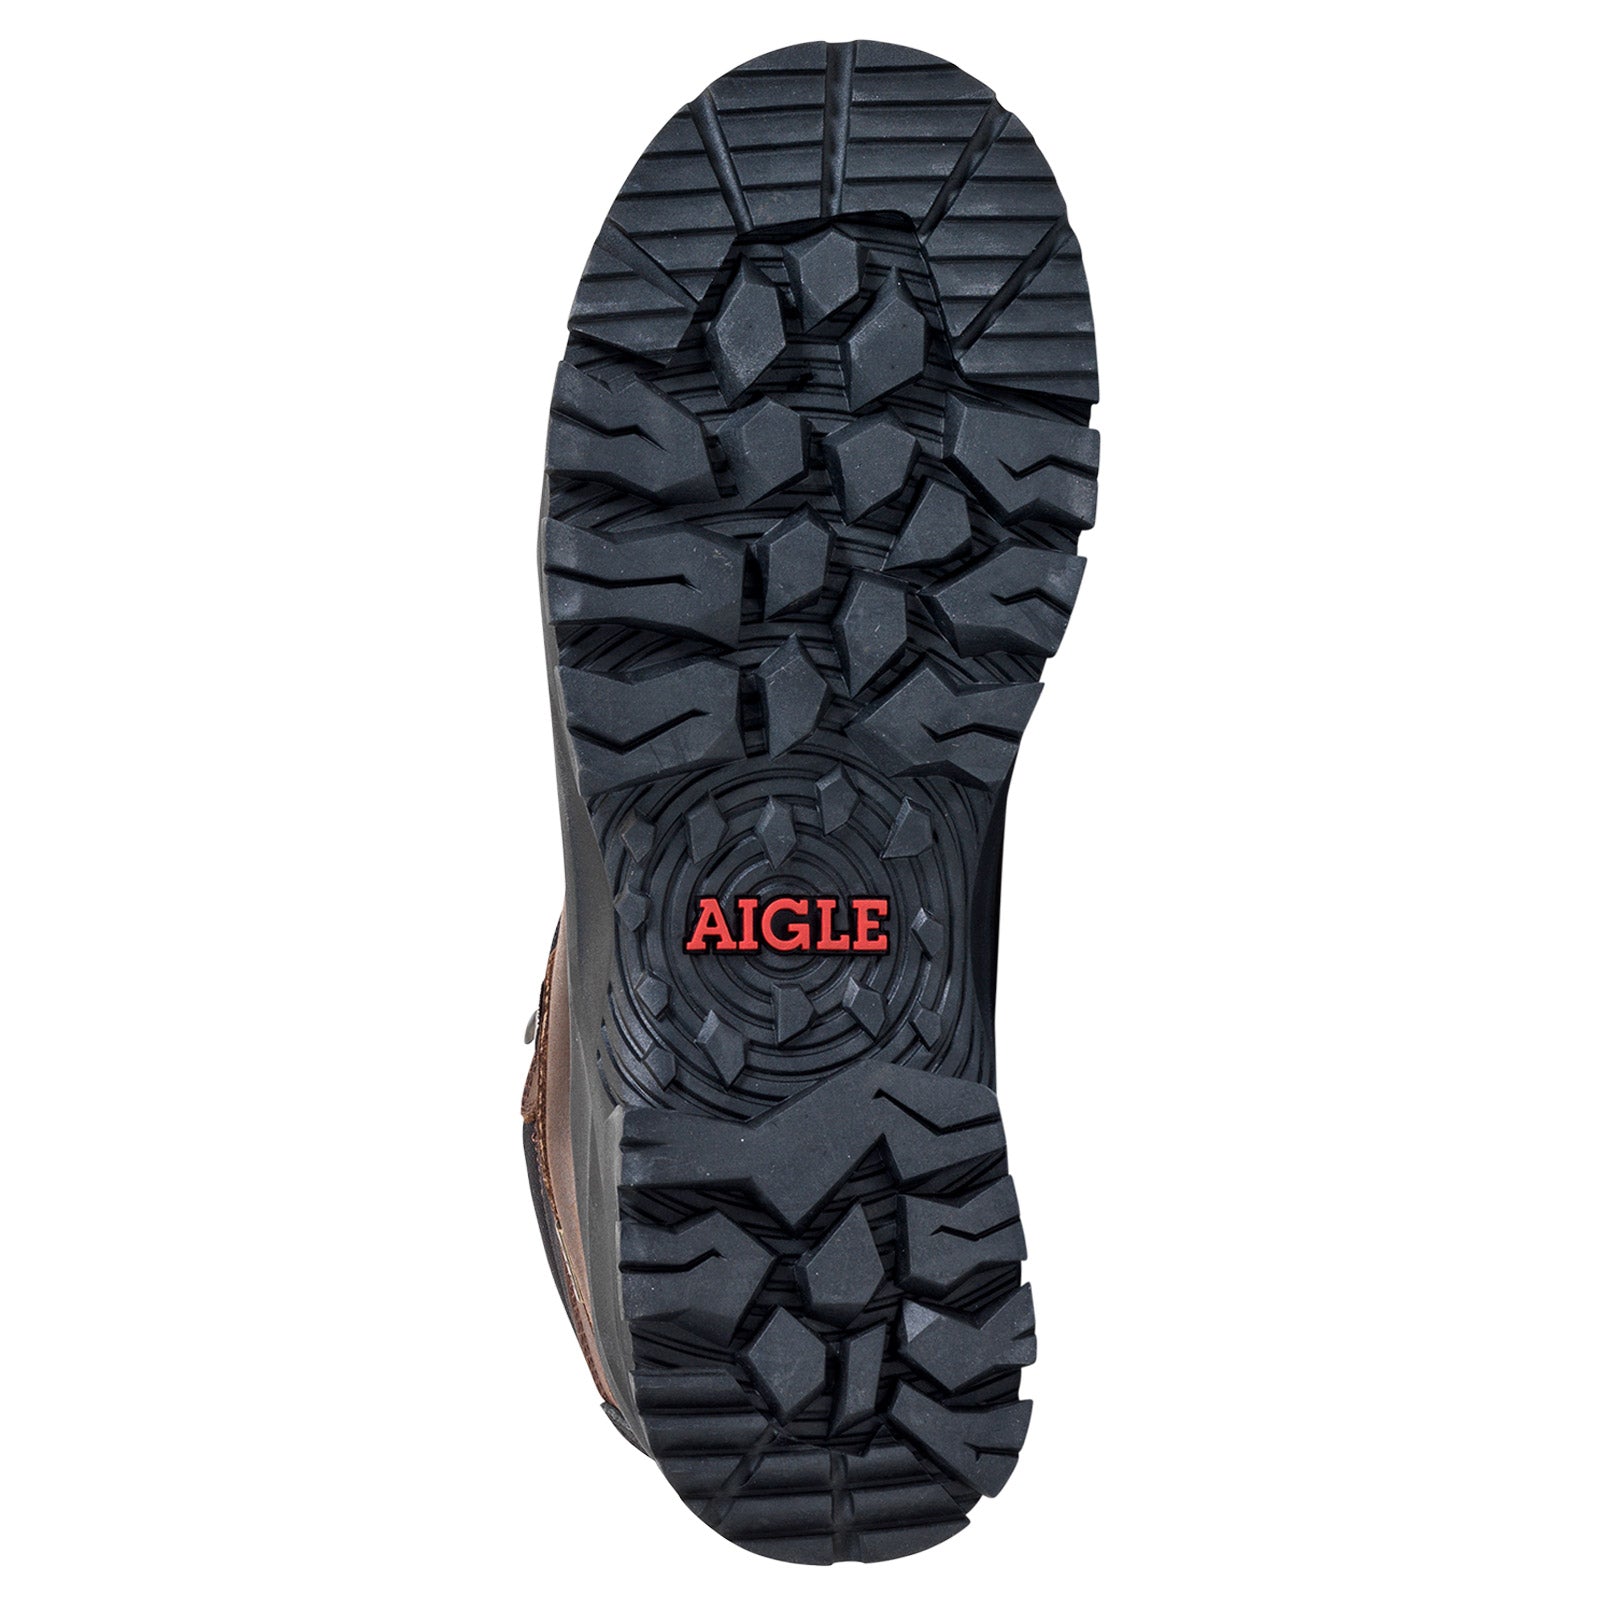 Es handelt sich hier um AIGLE Laforse MTD® - Outdoor Stiefel für die Jagd.